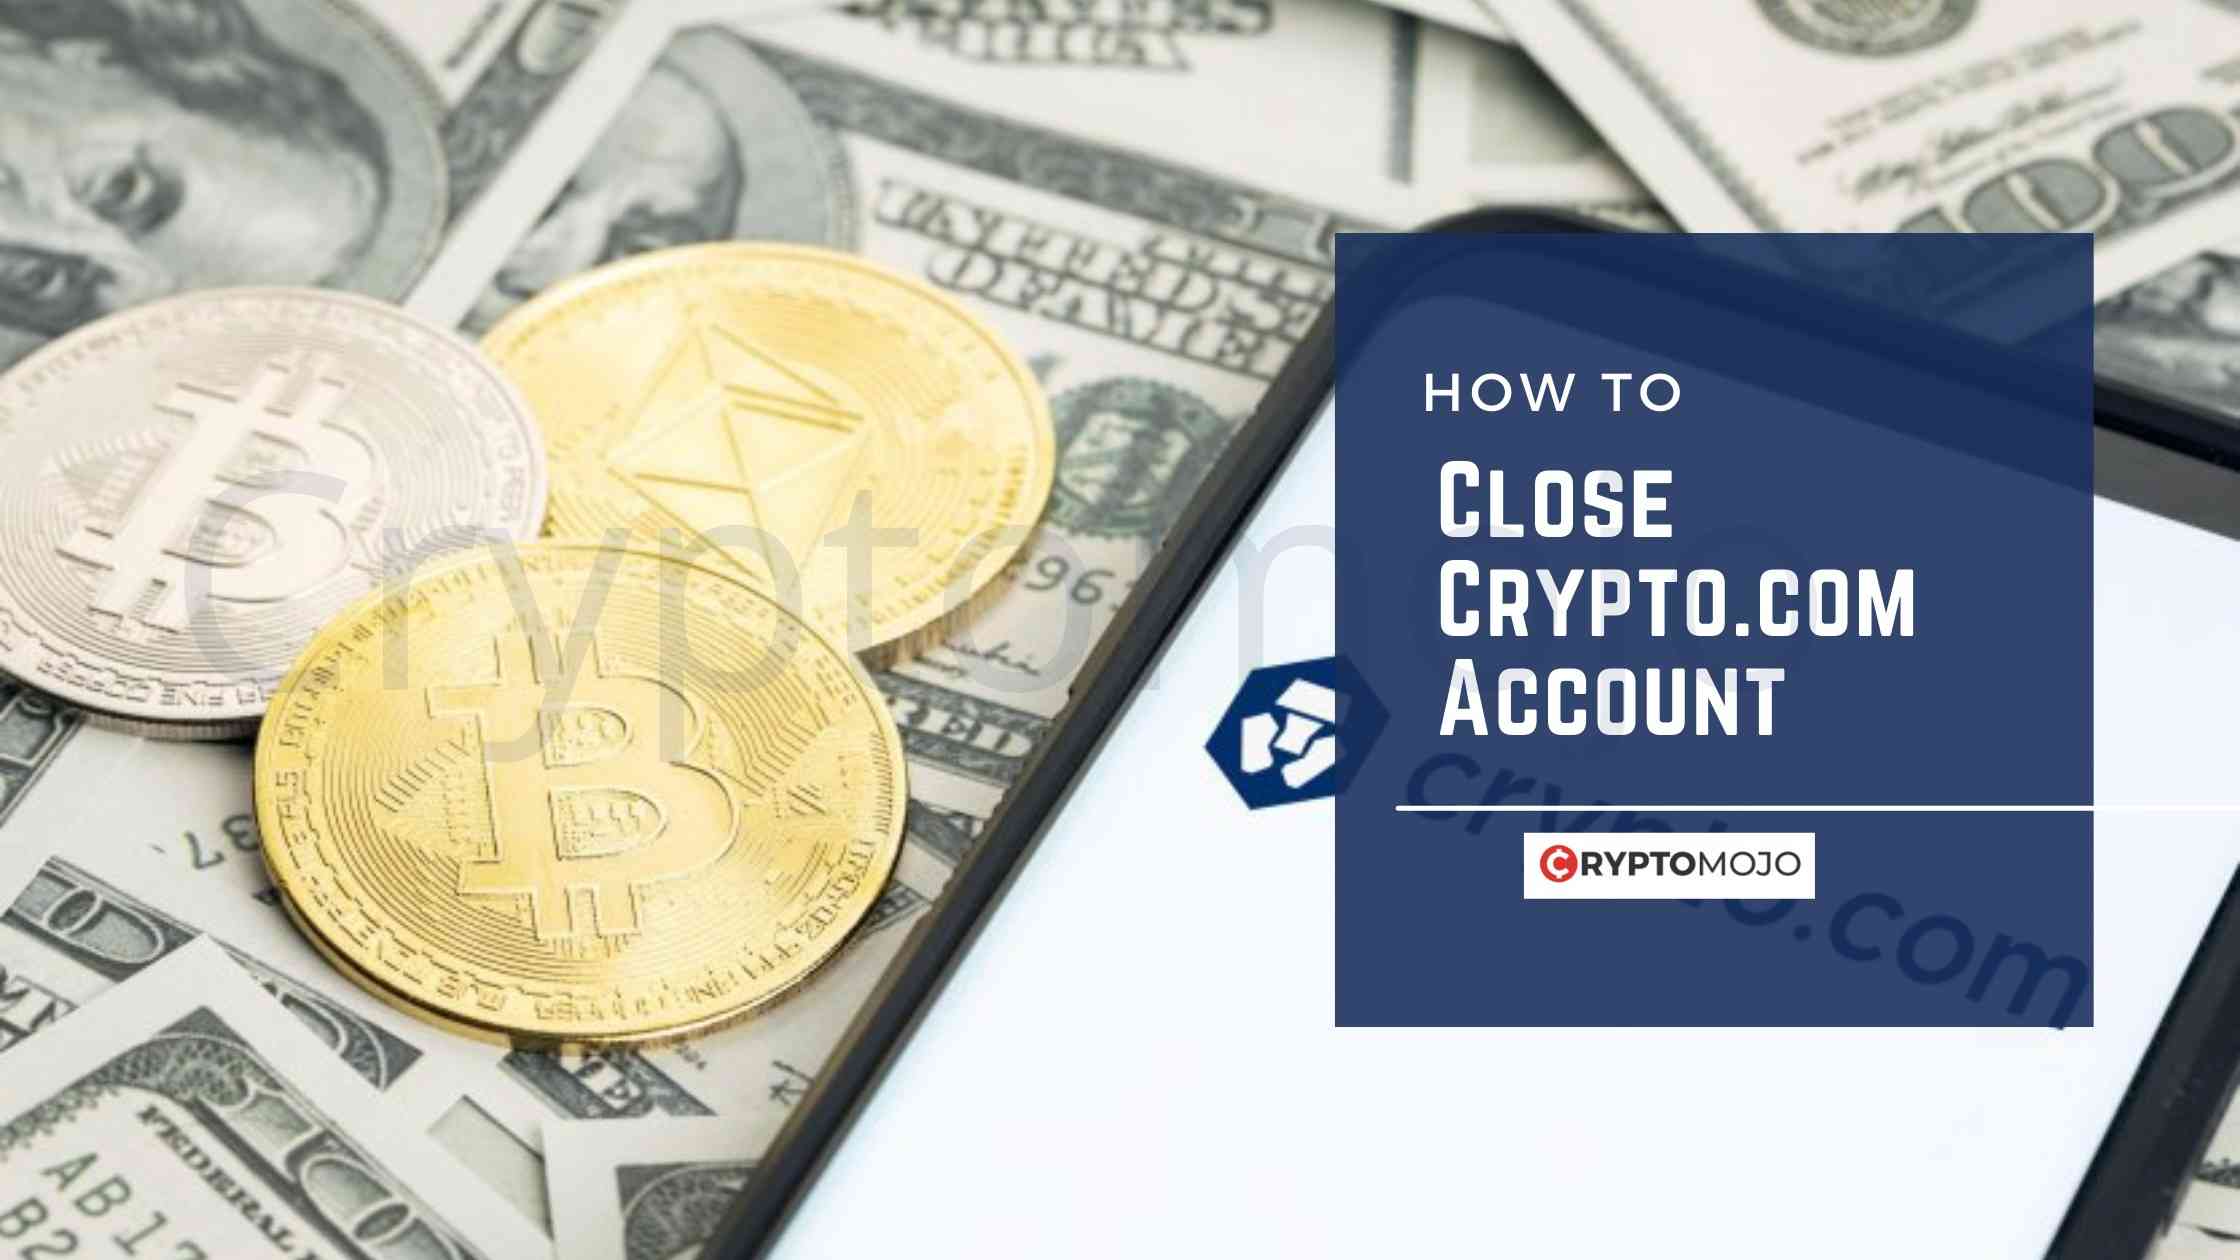 How To Close Crypto.com Account